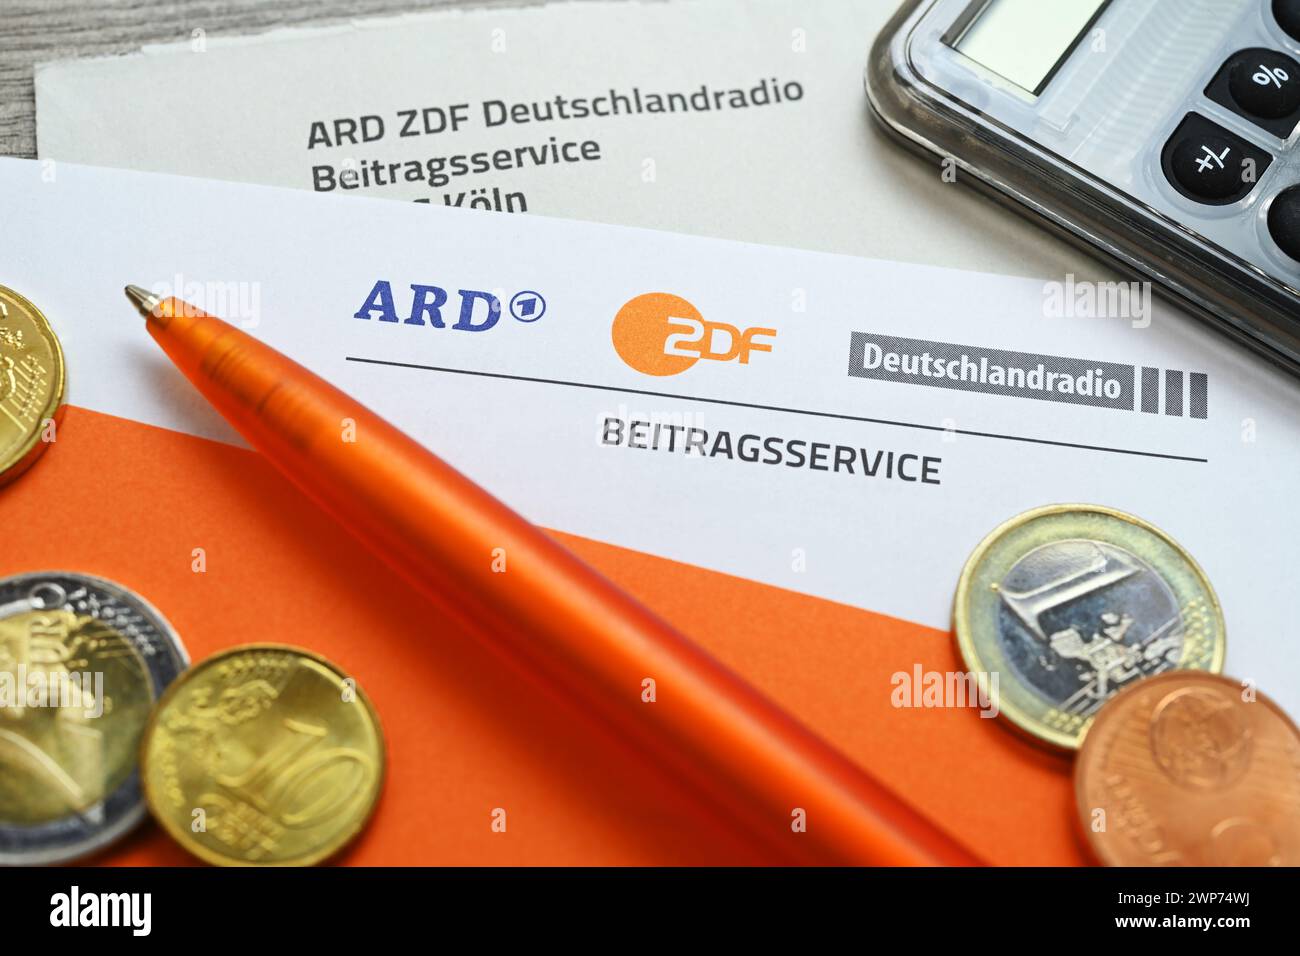 Brief des ARD ZDF Deutschlandradio Beitragsservice mit Taschenrechner und Geldmünzen, Symbolfoto Erhöhung des Rundfunkbeitrags Foto Stock